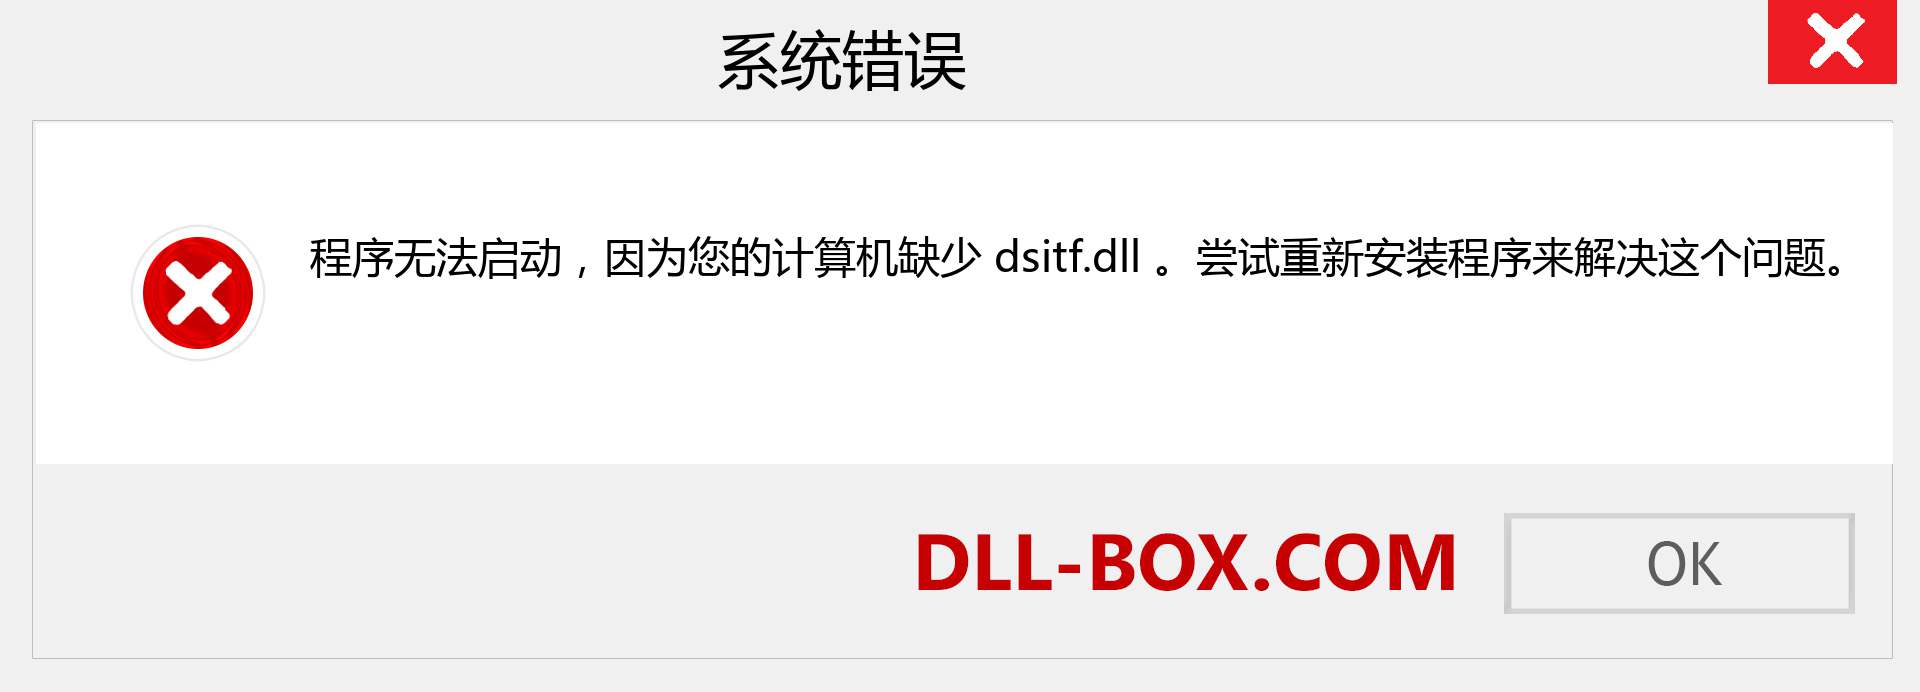 dsitf.dll 文件丢失？。 适用于 Windows 7、8、10 的下载 - 修复 Windows、照片、图像上的 dsitf dll 丢失错误